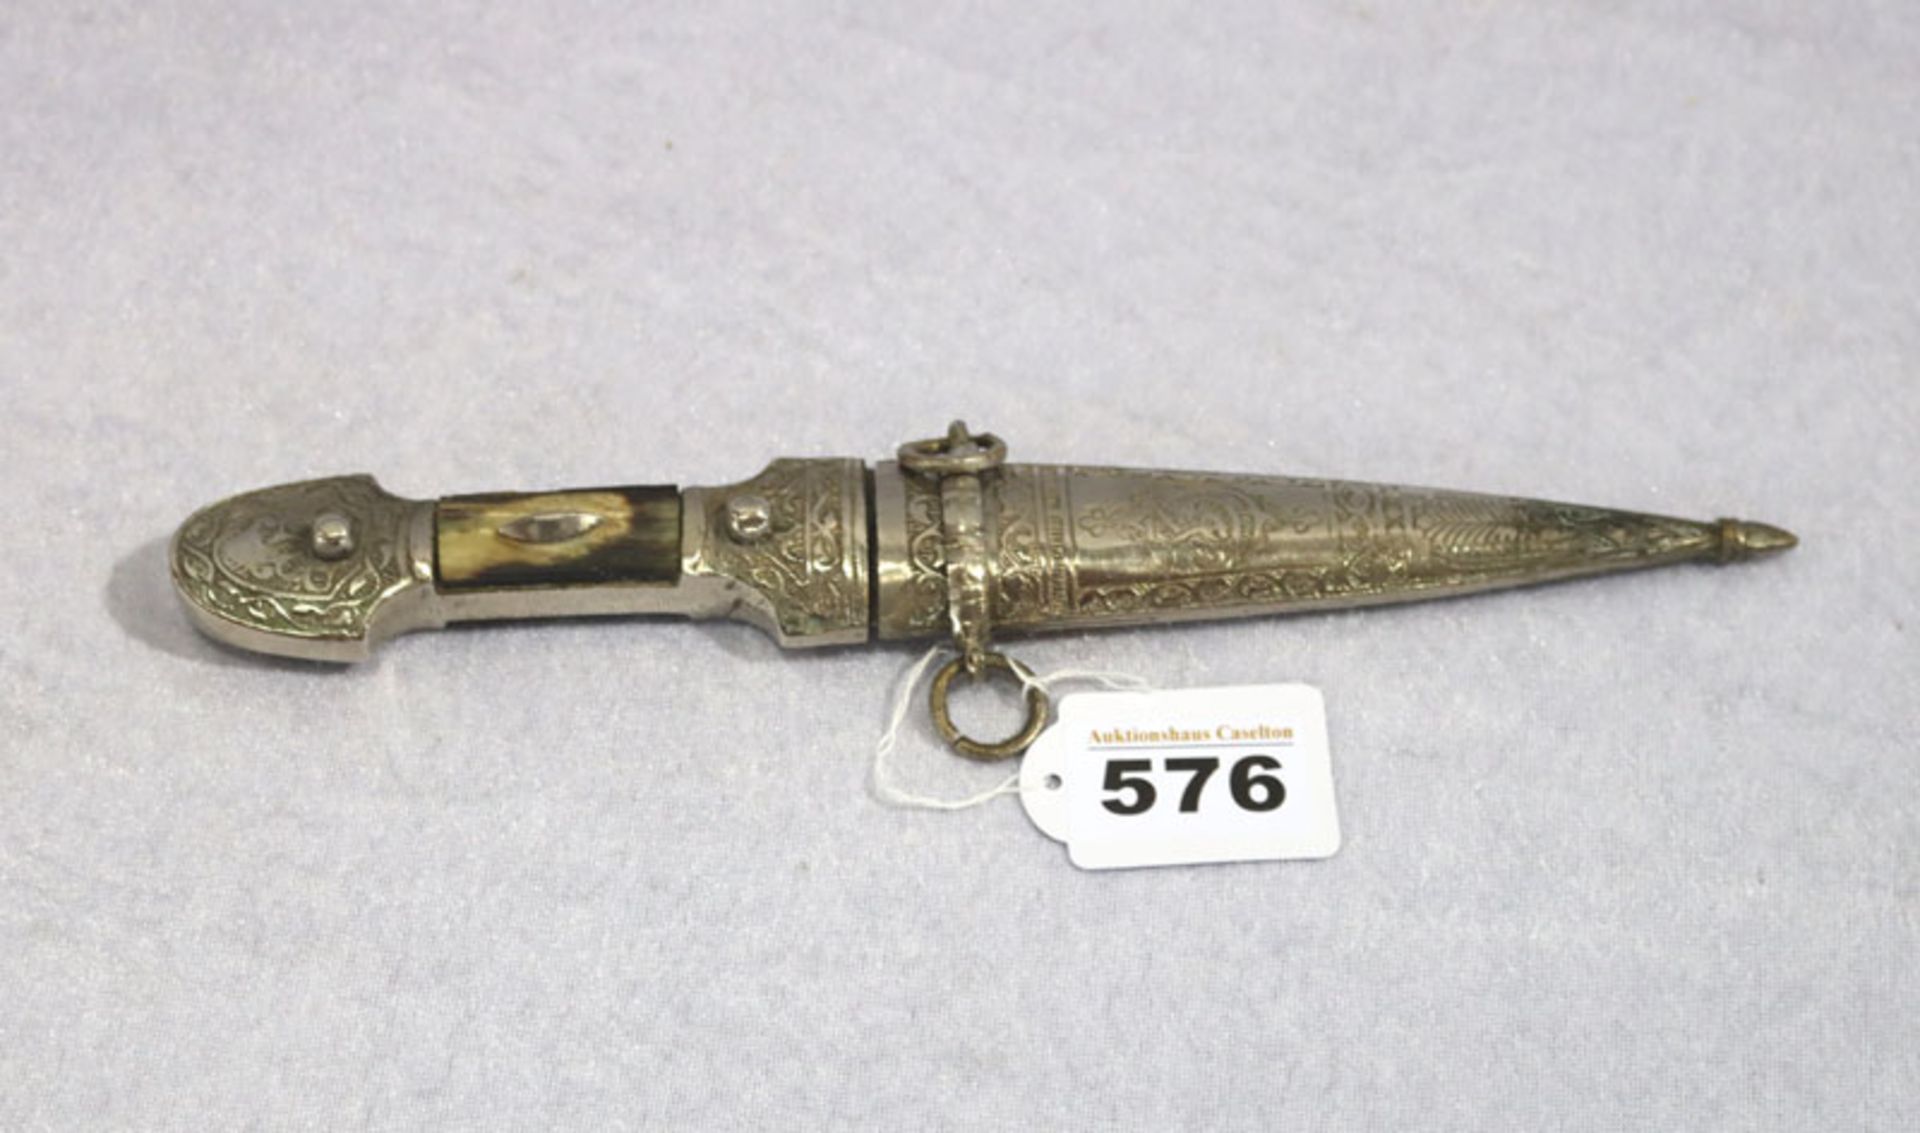 Dekoratives Messer mit verziertem Griff und Scheide, Hornschalen, 19. Jahrhundert, Altersspuren